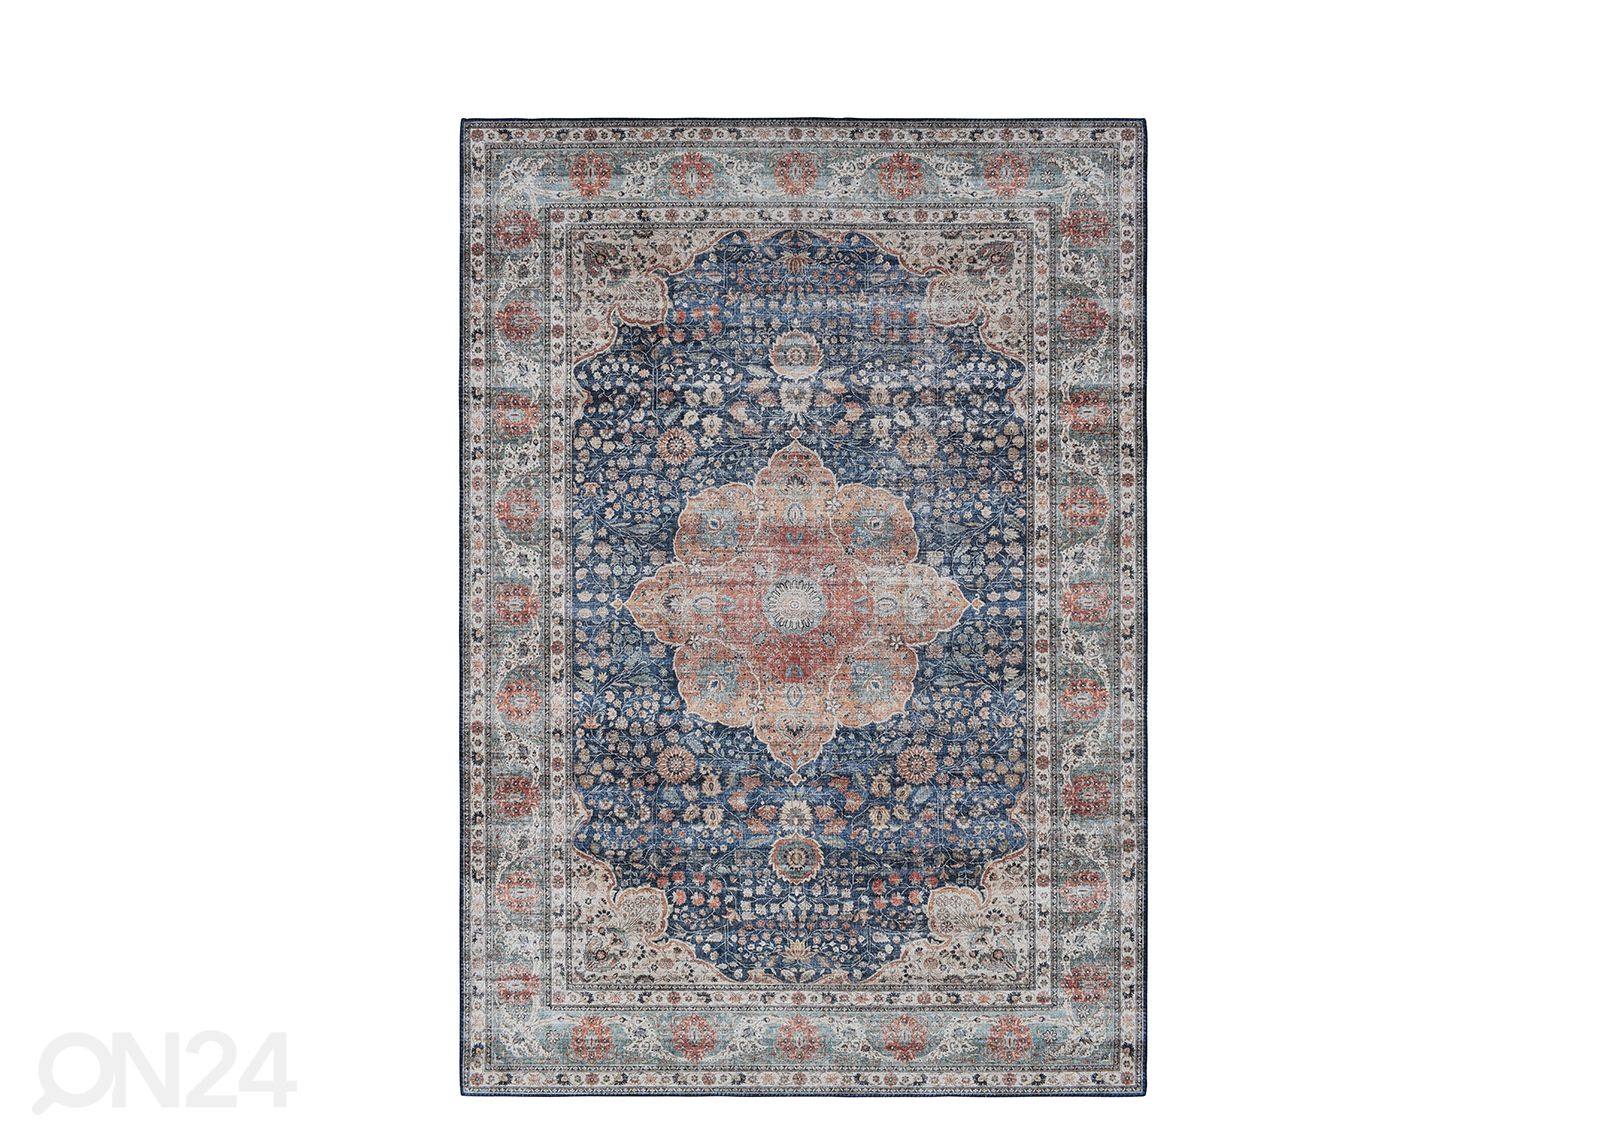 Matto Nepal 120x170 cm, sininen kuvasuurennos